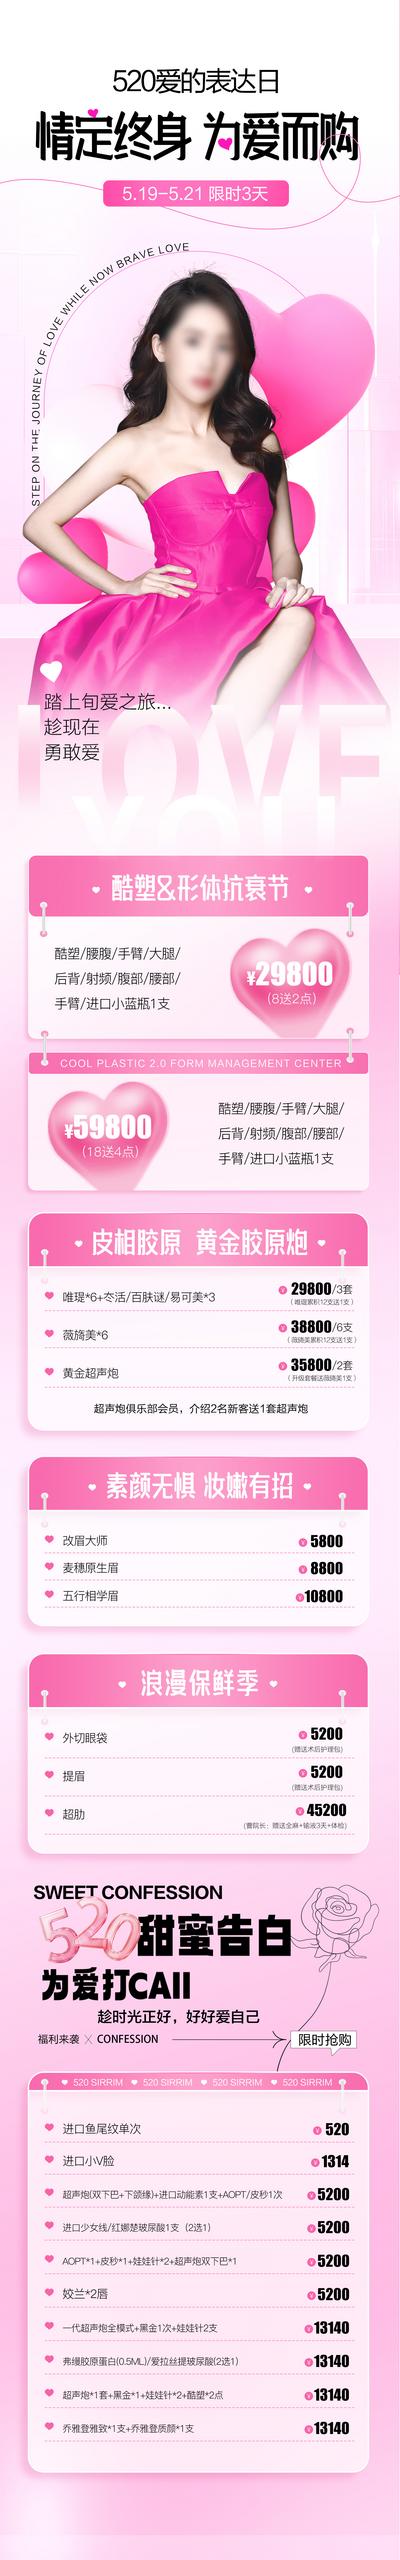 南门网 专题设计 长图 医美 情人节 公历节日 中国传统节日 七夕 520 优惠 卡项 甜蜜 粉色  